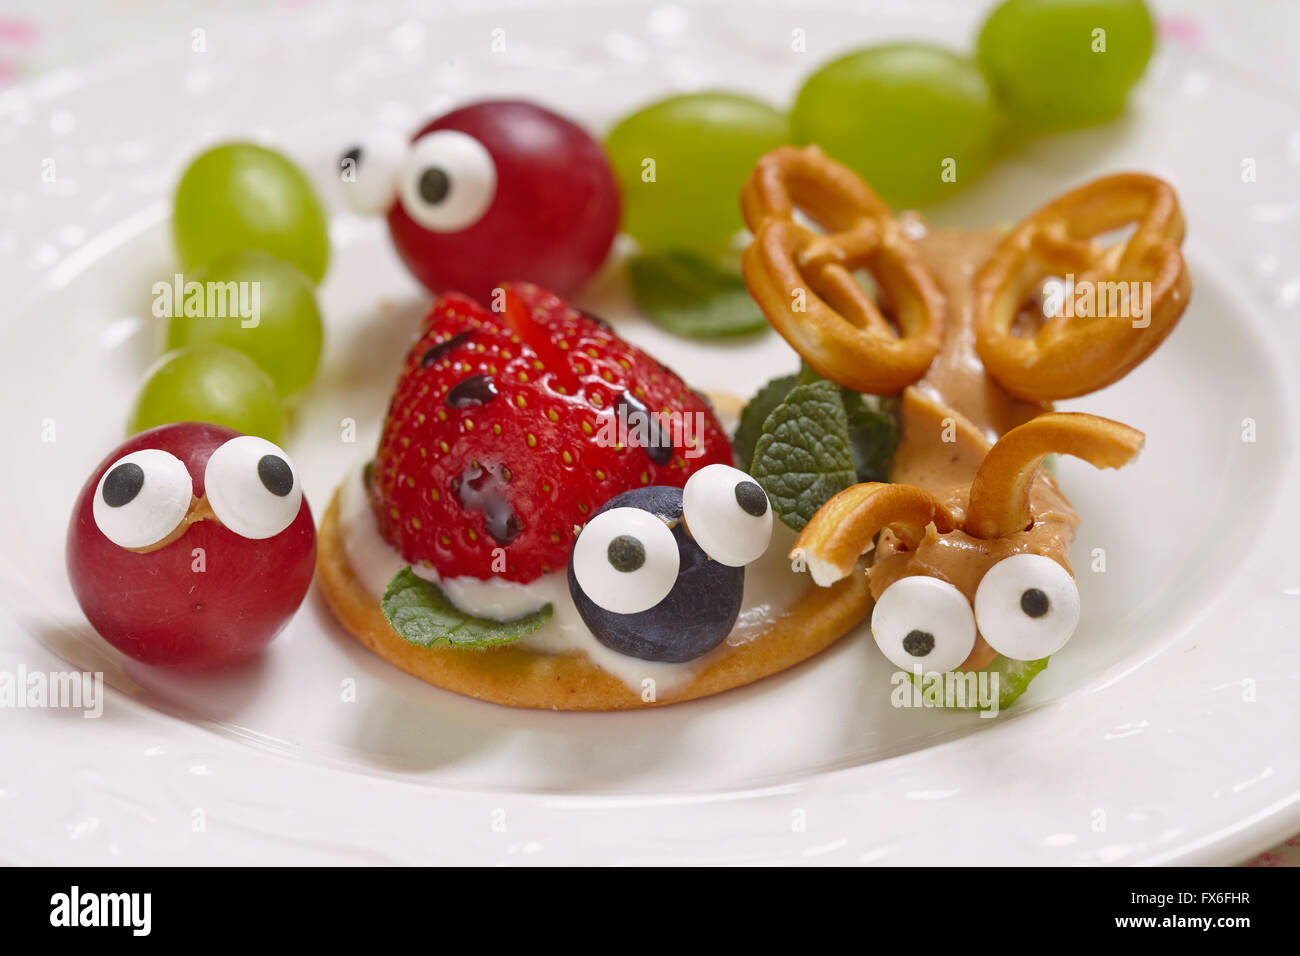 Lustige Käfer aus Trauben, Beeren und Brezeln Stockfotografie - Alamy